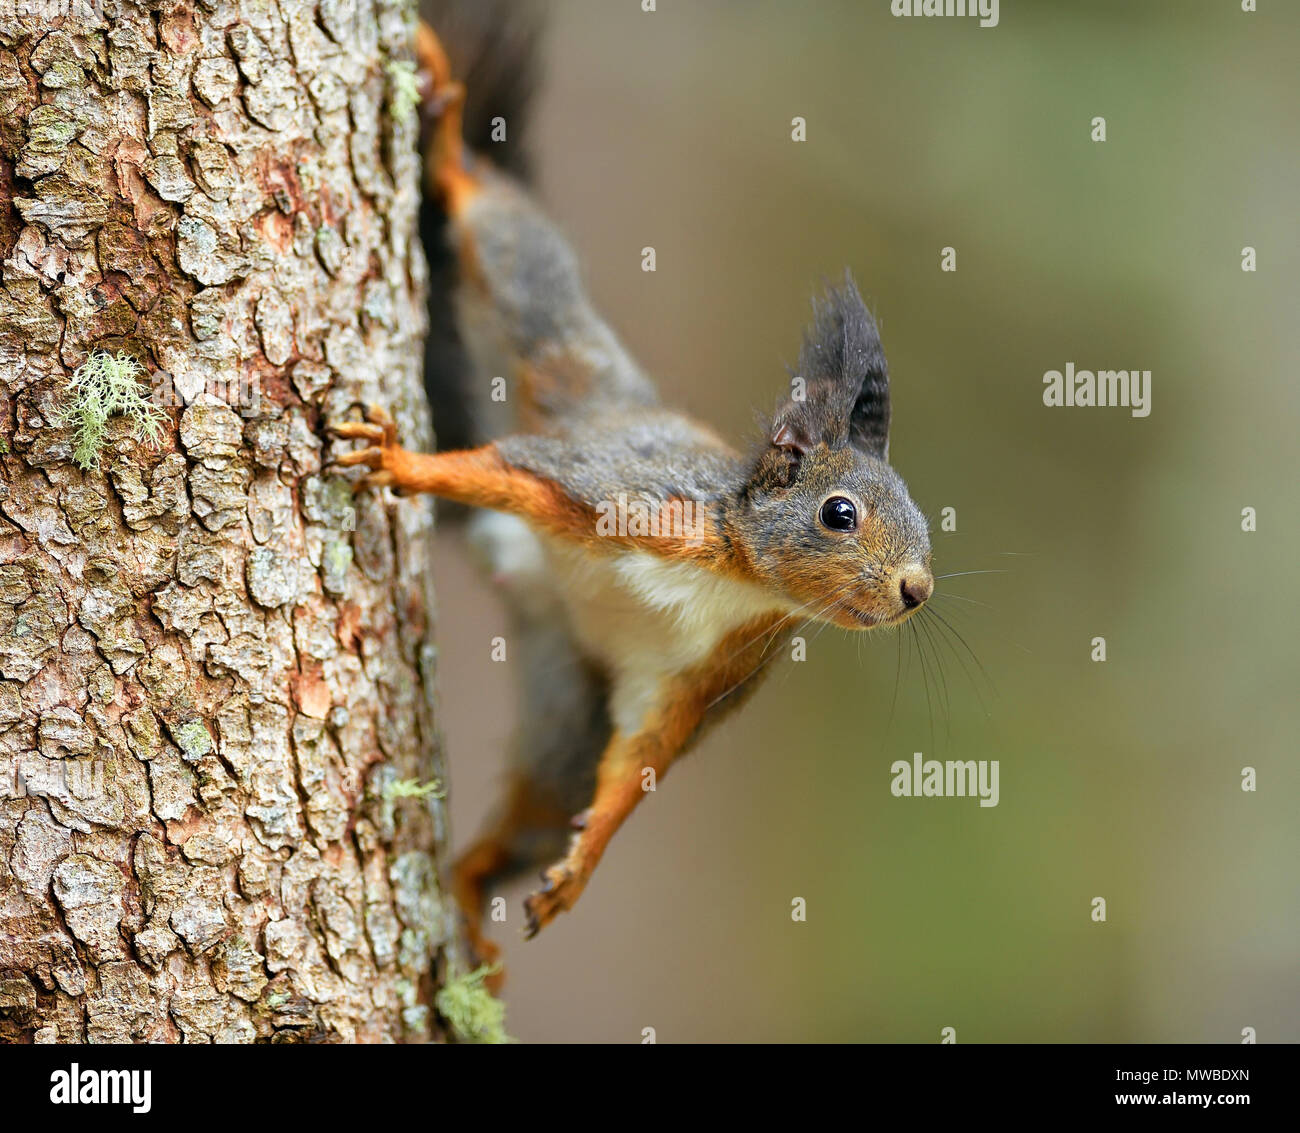 Eurasian écureuil roux (Sciurus vulgaris), escalade un tronc d'arbre, Grisons, Suisse Banque D'Images